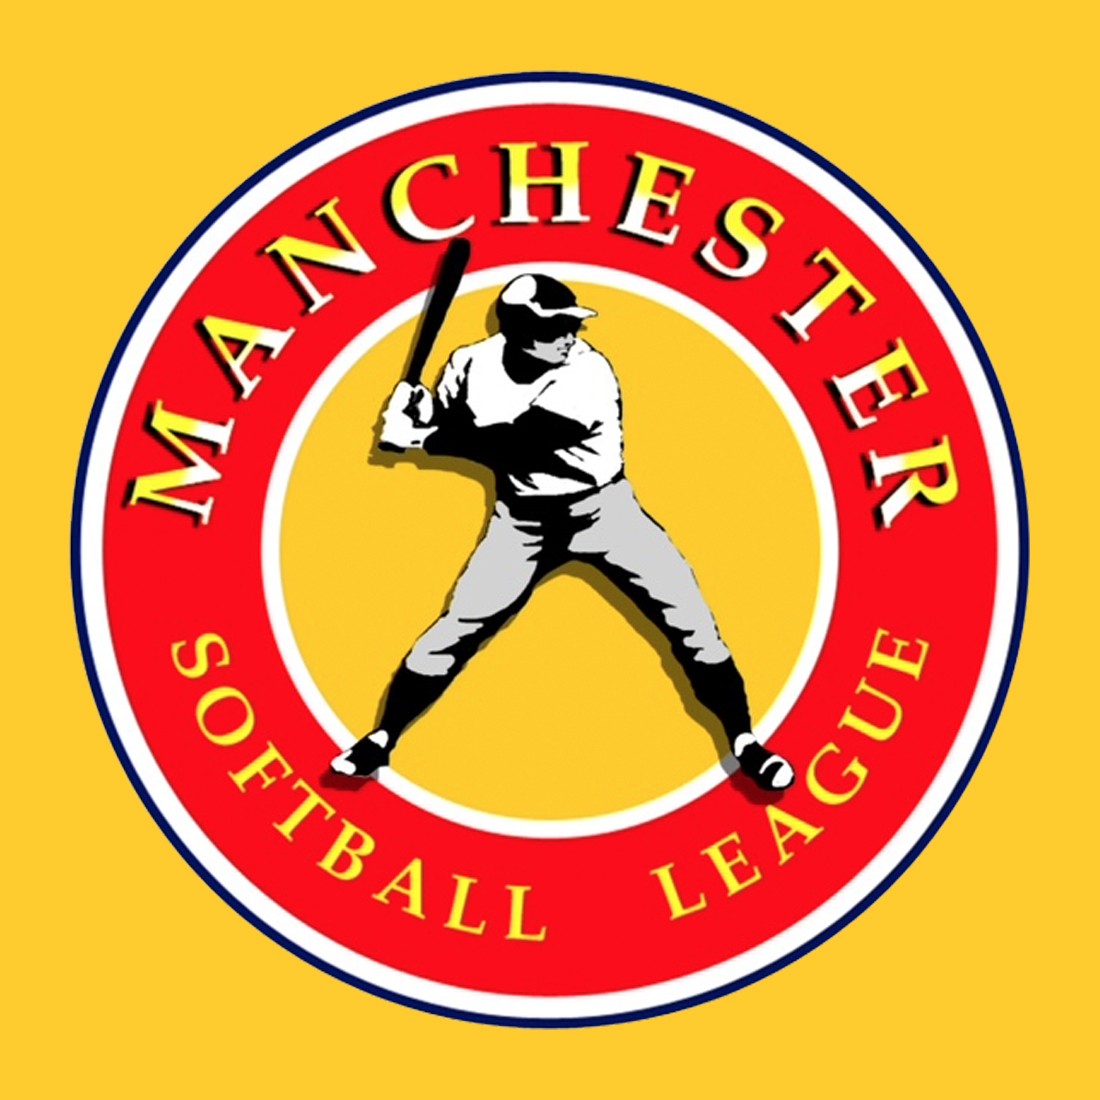 Manchester Softball League